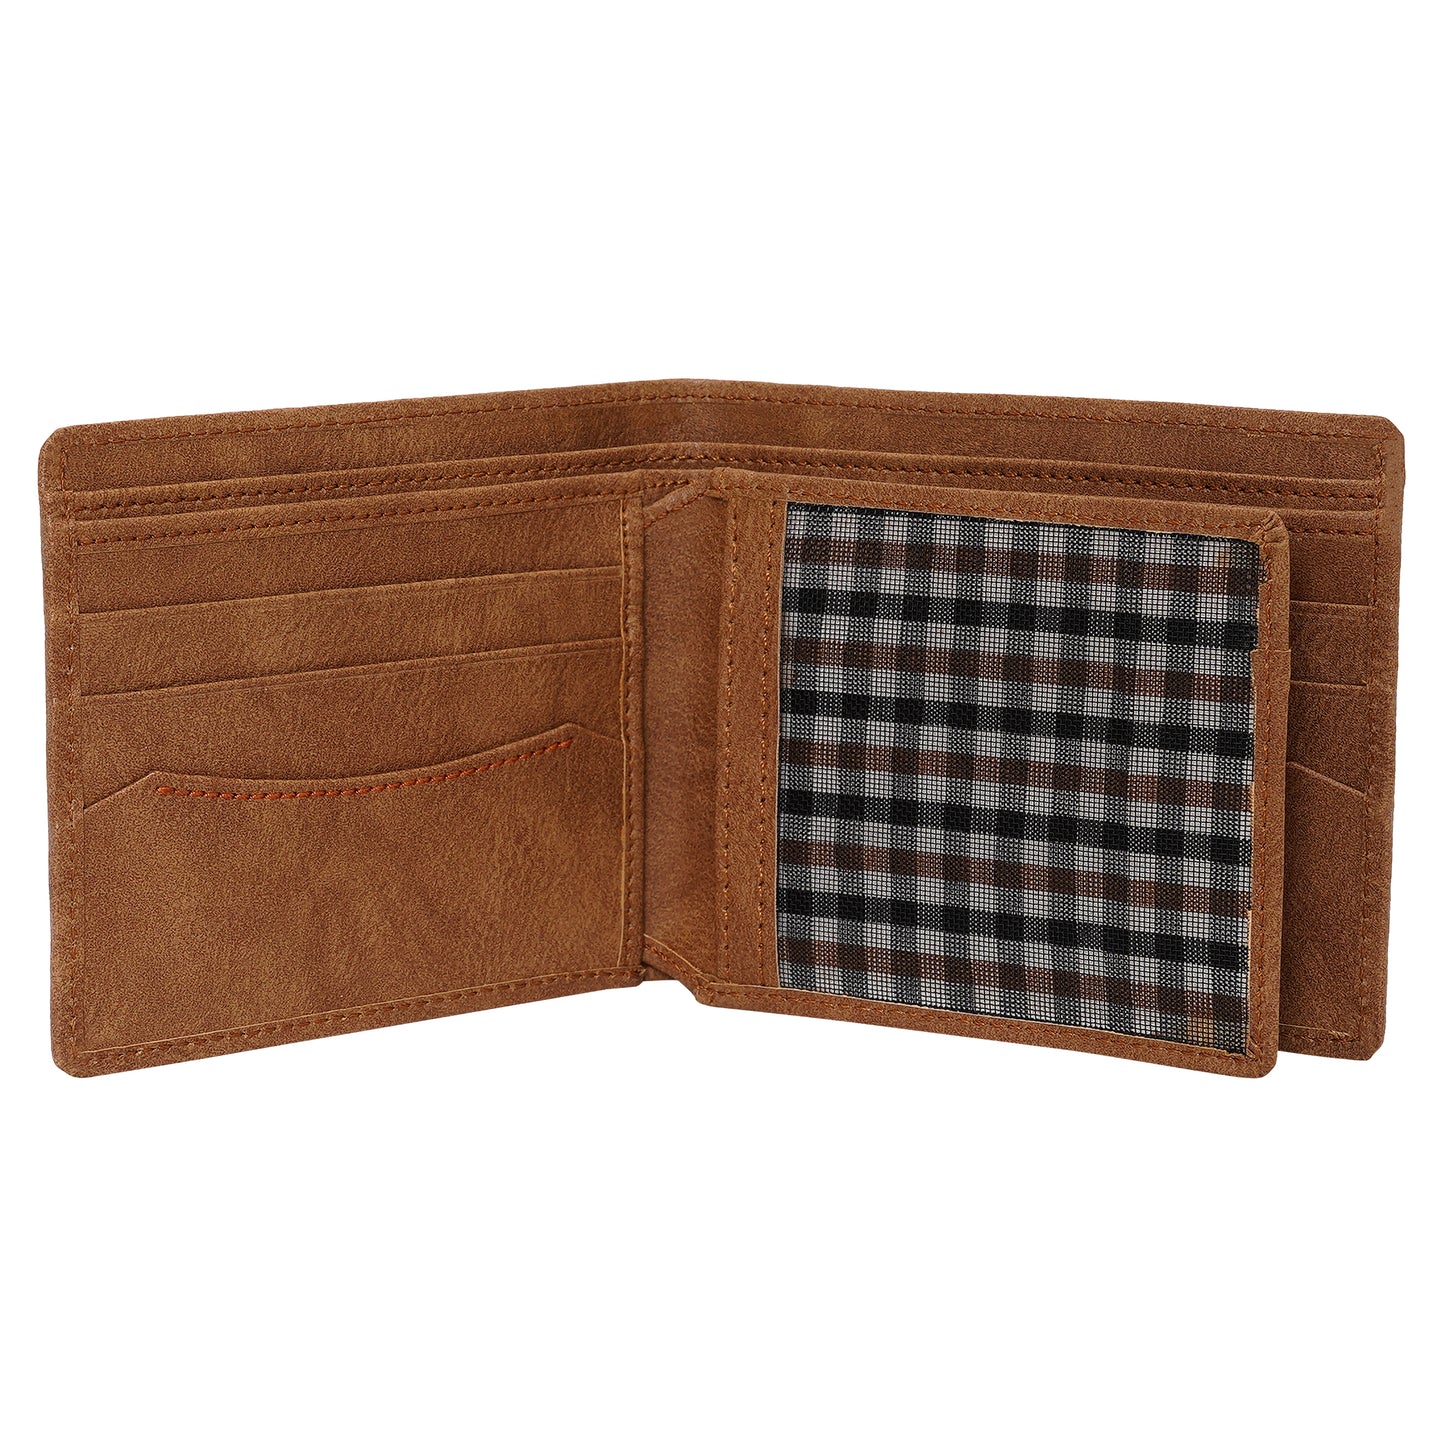 Makas men's wallet , internal look 3,color - Brown